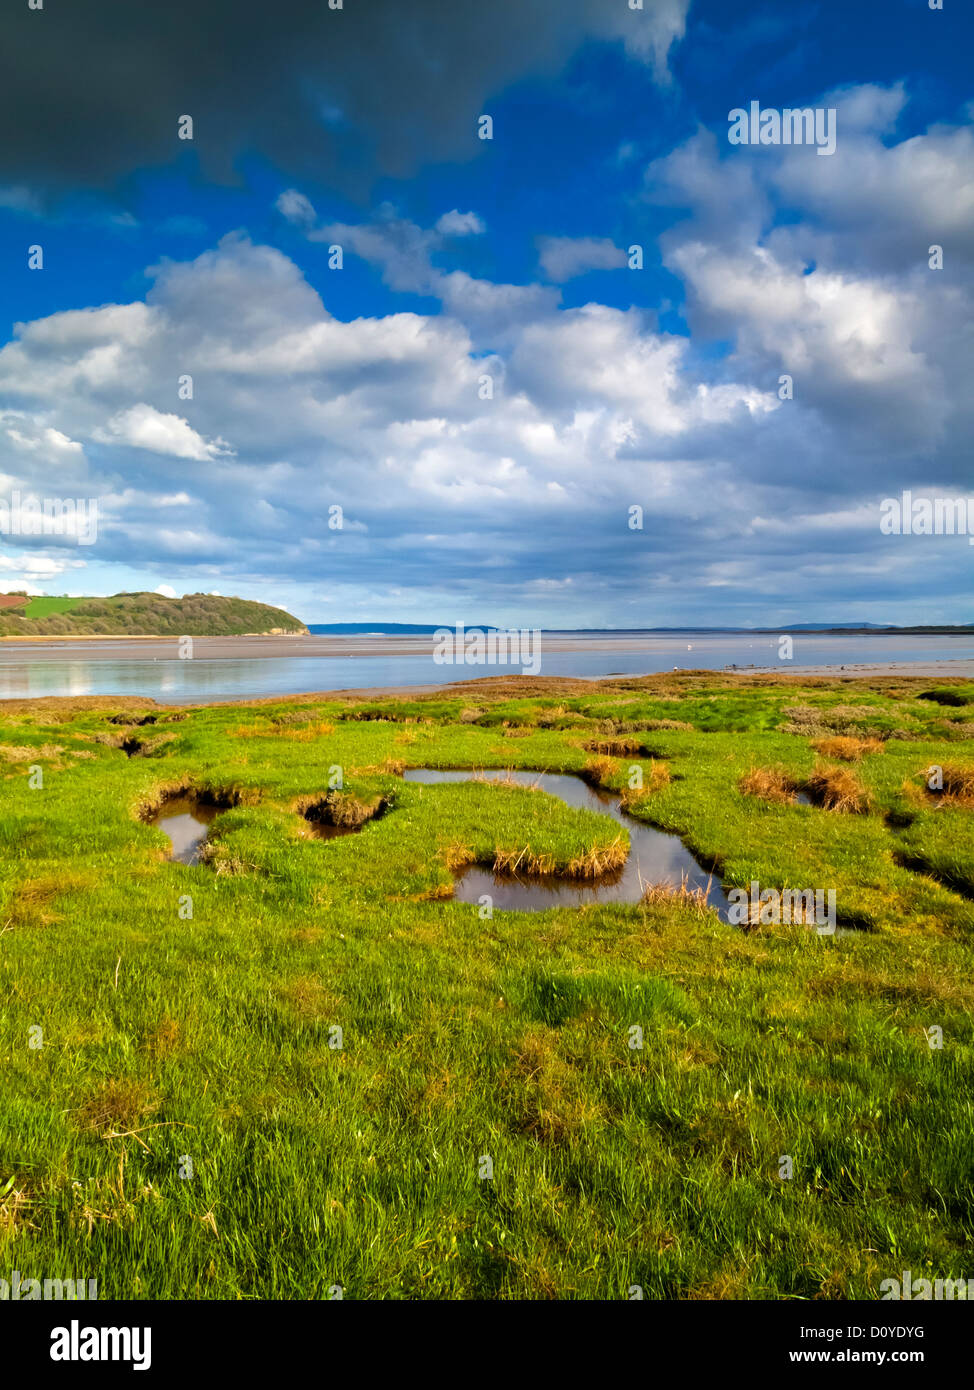 Velme di marea del fiume Taf estuary in Laugharne Carmarthenshire South Wales UK un villaggio dove lo scrittore Dylan Thomas ha vissuto Foto Stock